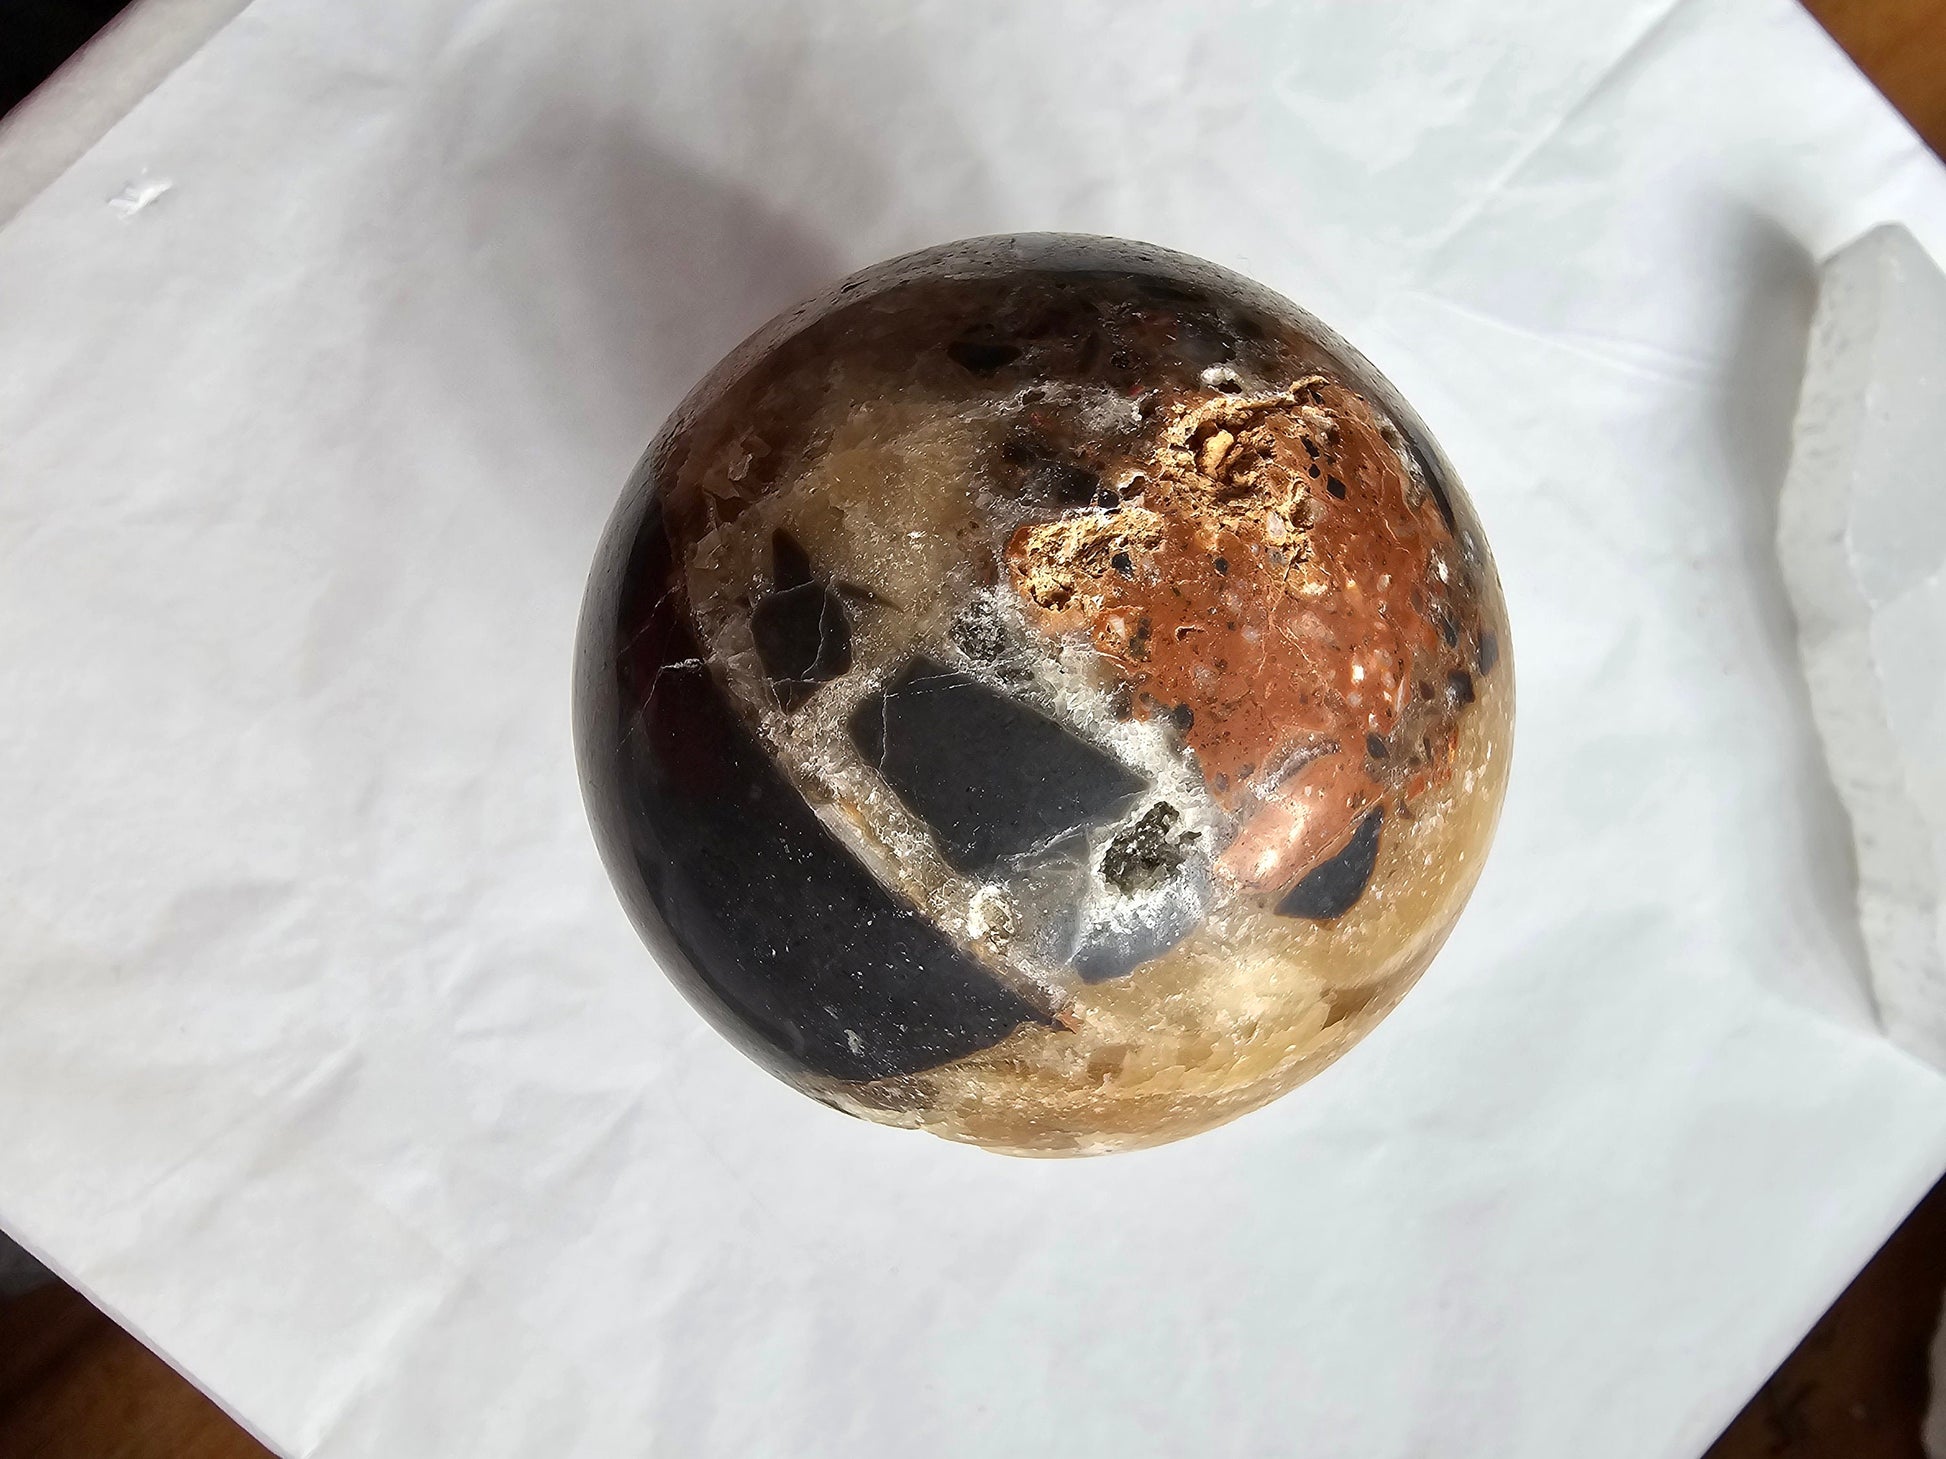 Rare Brecciated Aragonite spheres